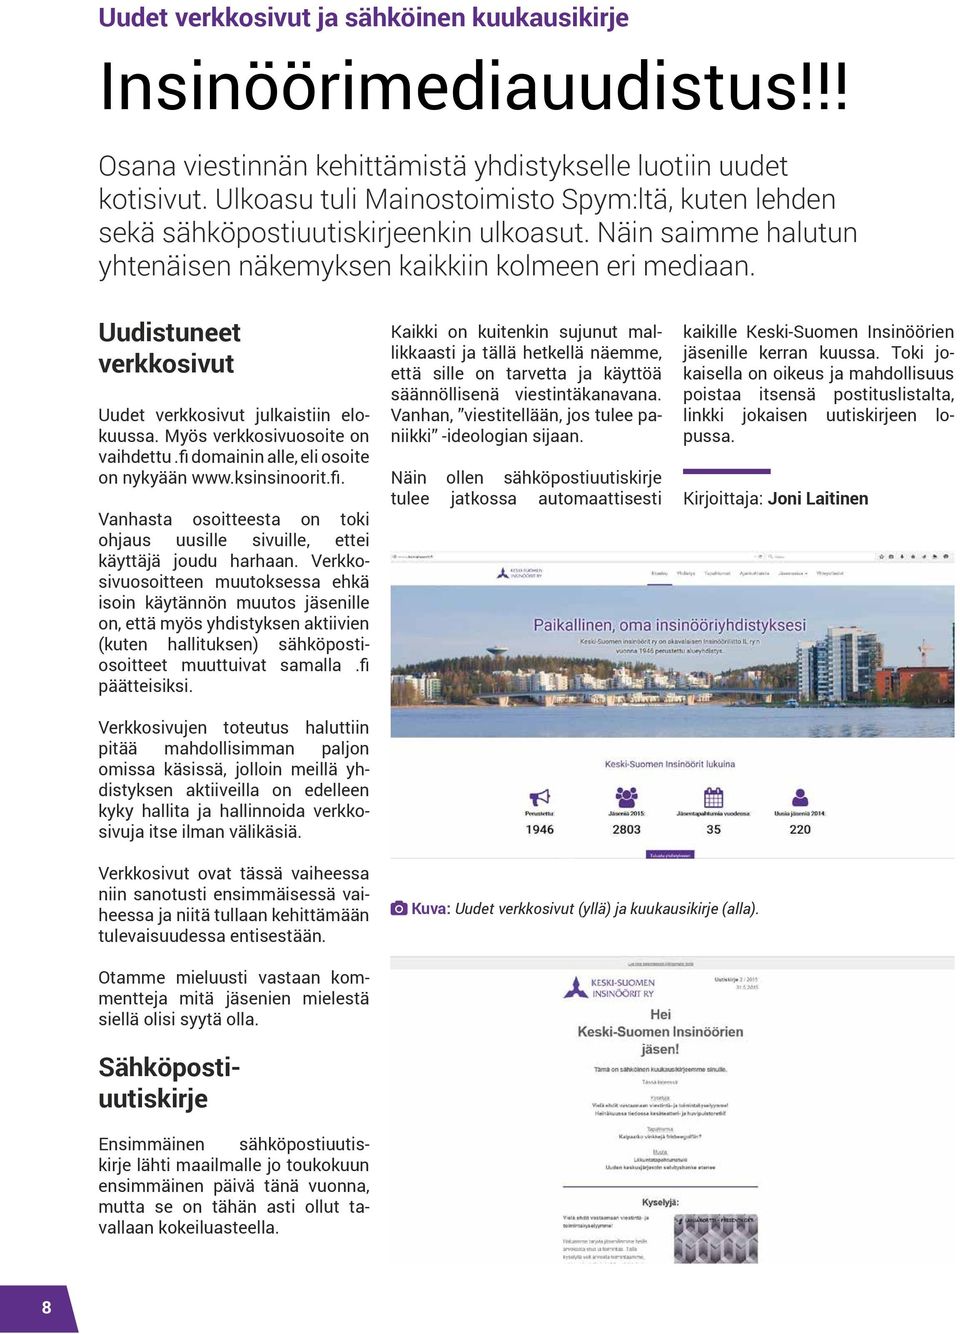 Uudistuneet verkkosivut Uudet verkkosivut julkaistiin elokuussa. Myös verkkosivuosoite on vaihdettu.fi domainin alle, eli osoite on nykyään www.ksinsinoorit.fi. Vanhasta osoitteesta on toki ohjaus uusille sivuille, ettei käyttäjä joudu harhaan.